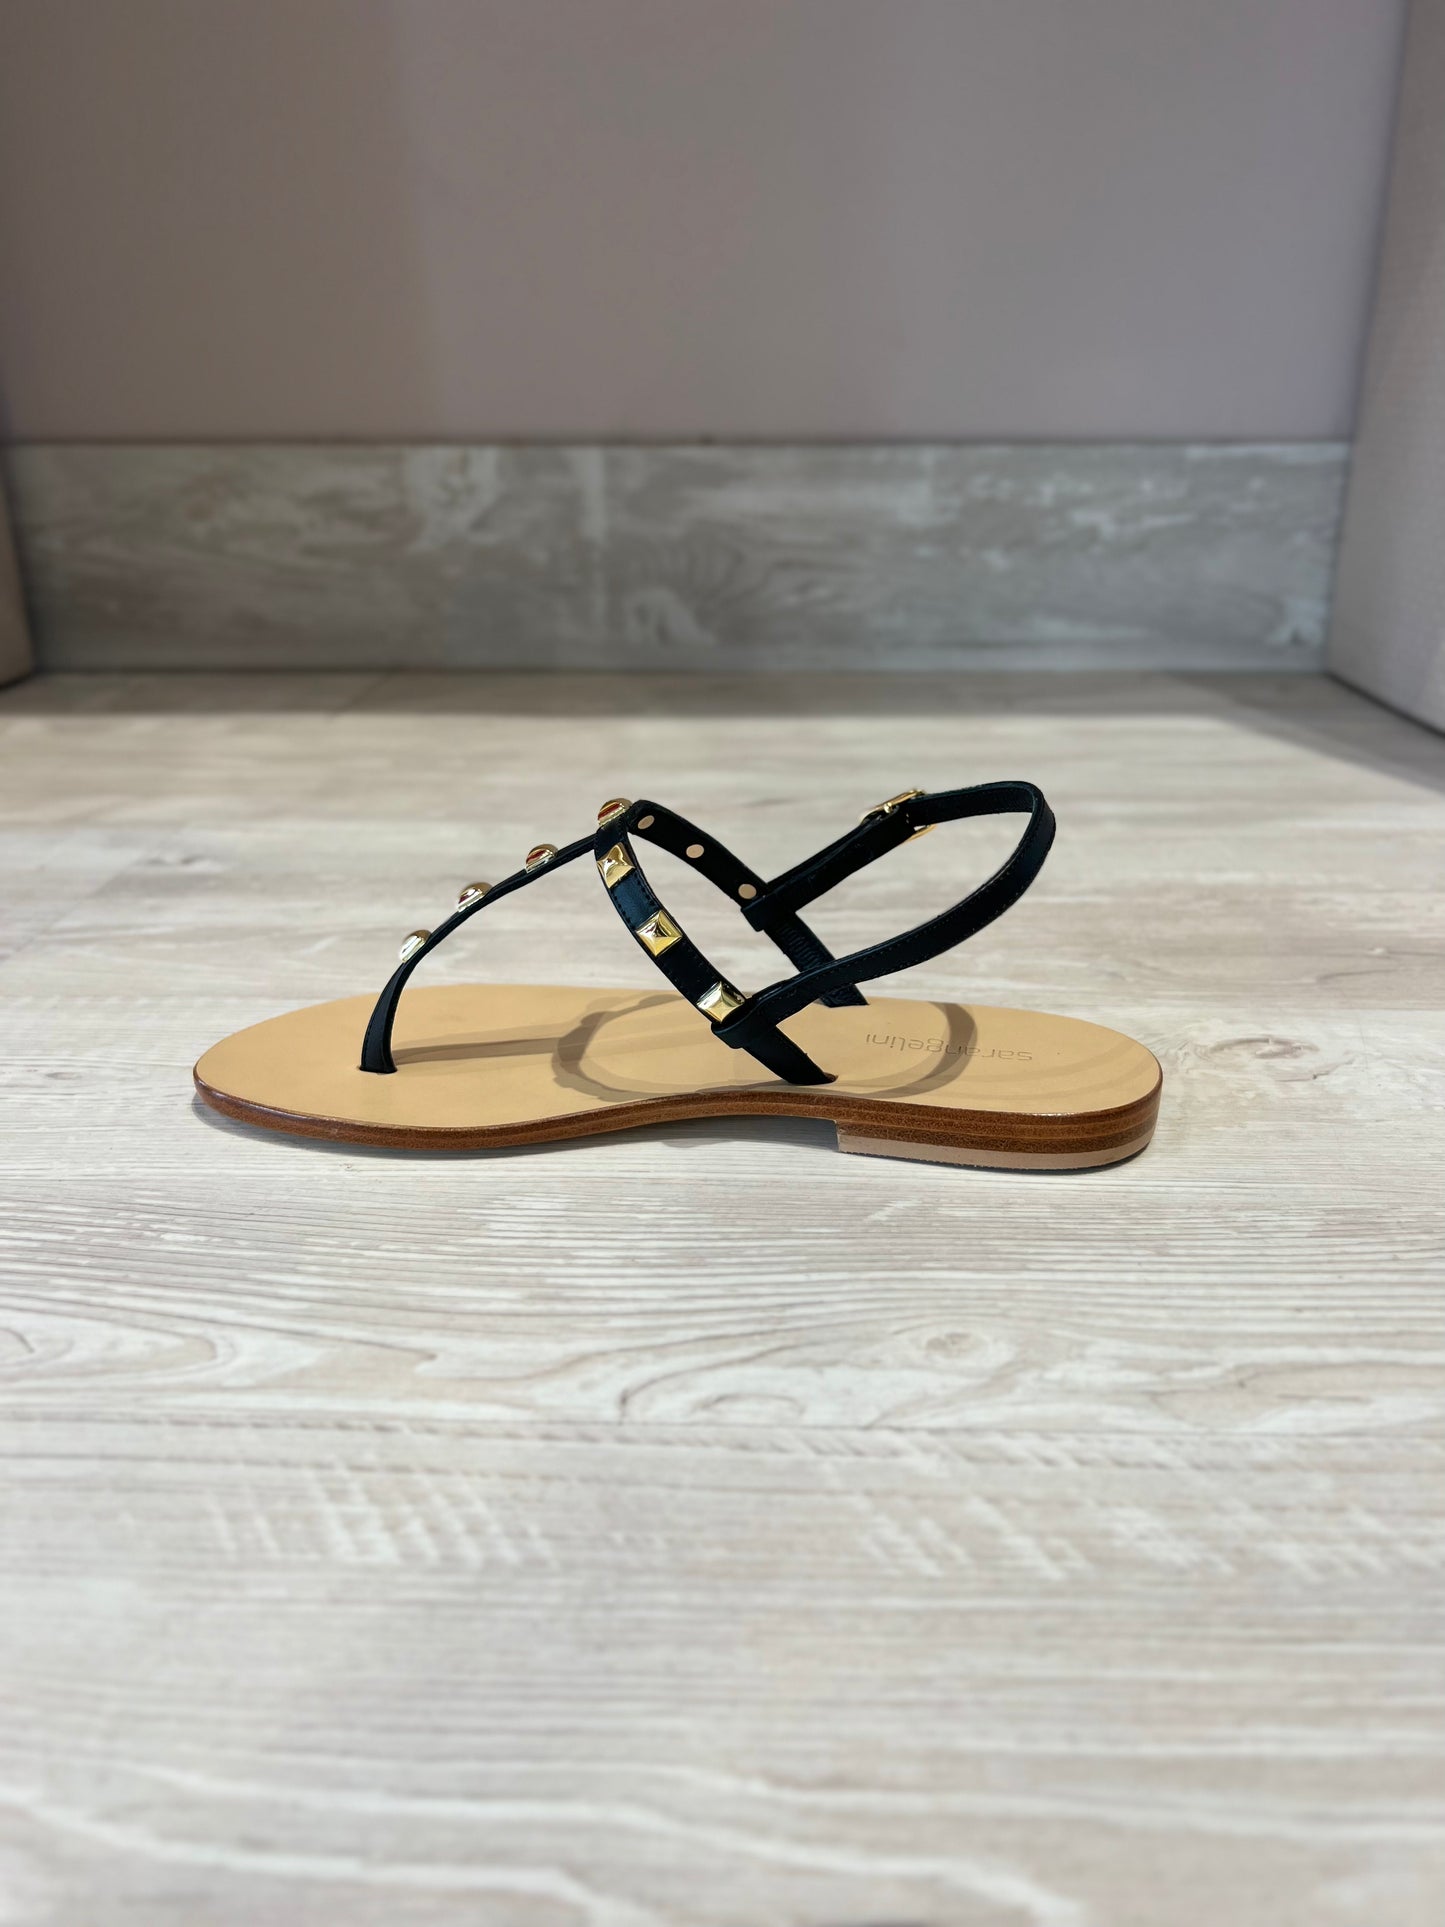 Sandalo cuoietto nero con borchiette-CS1221N